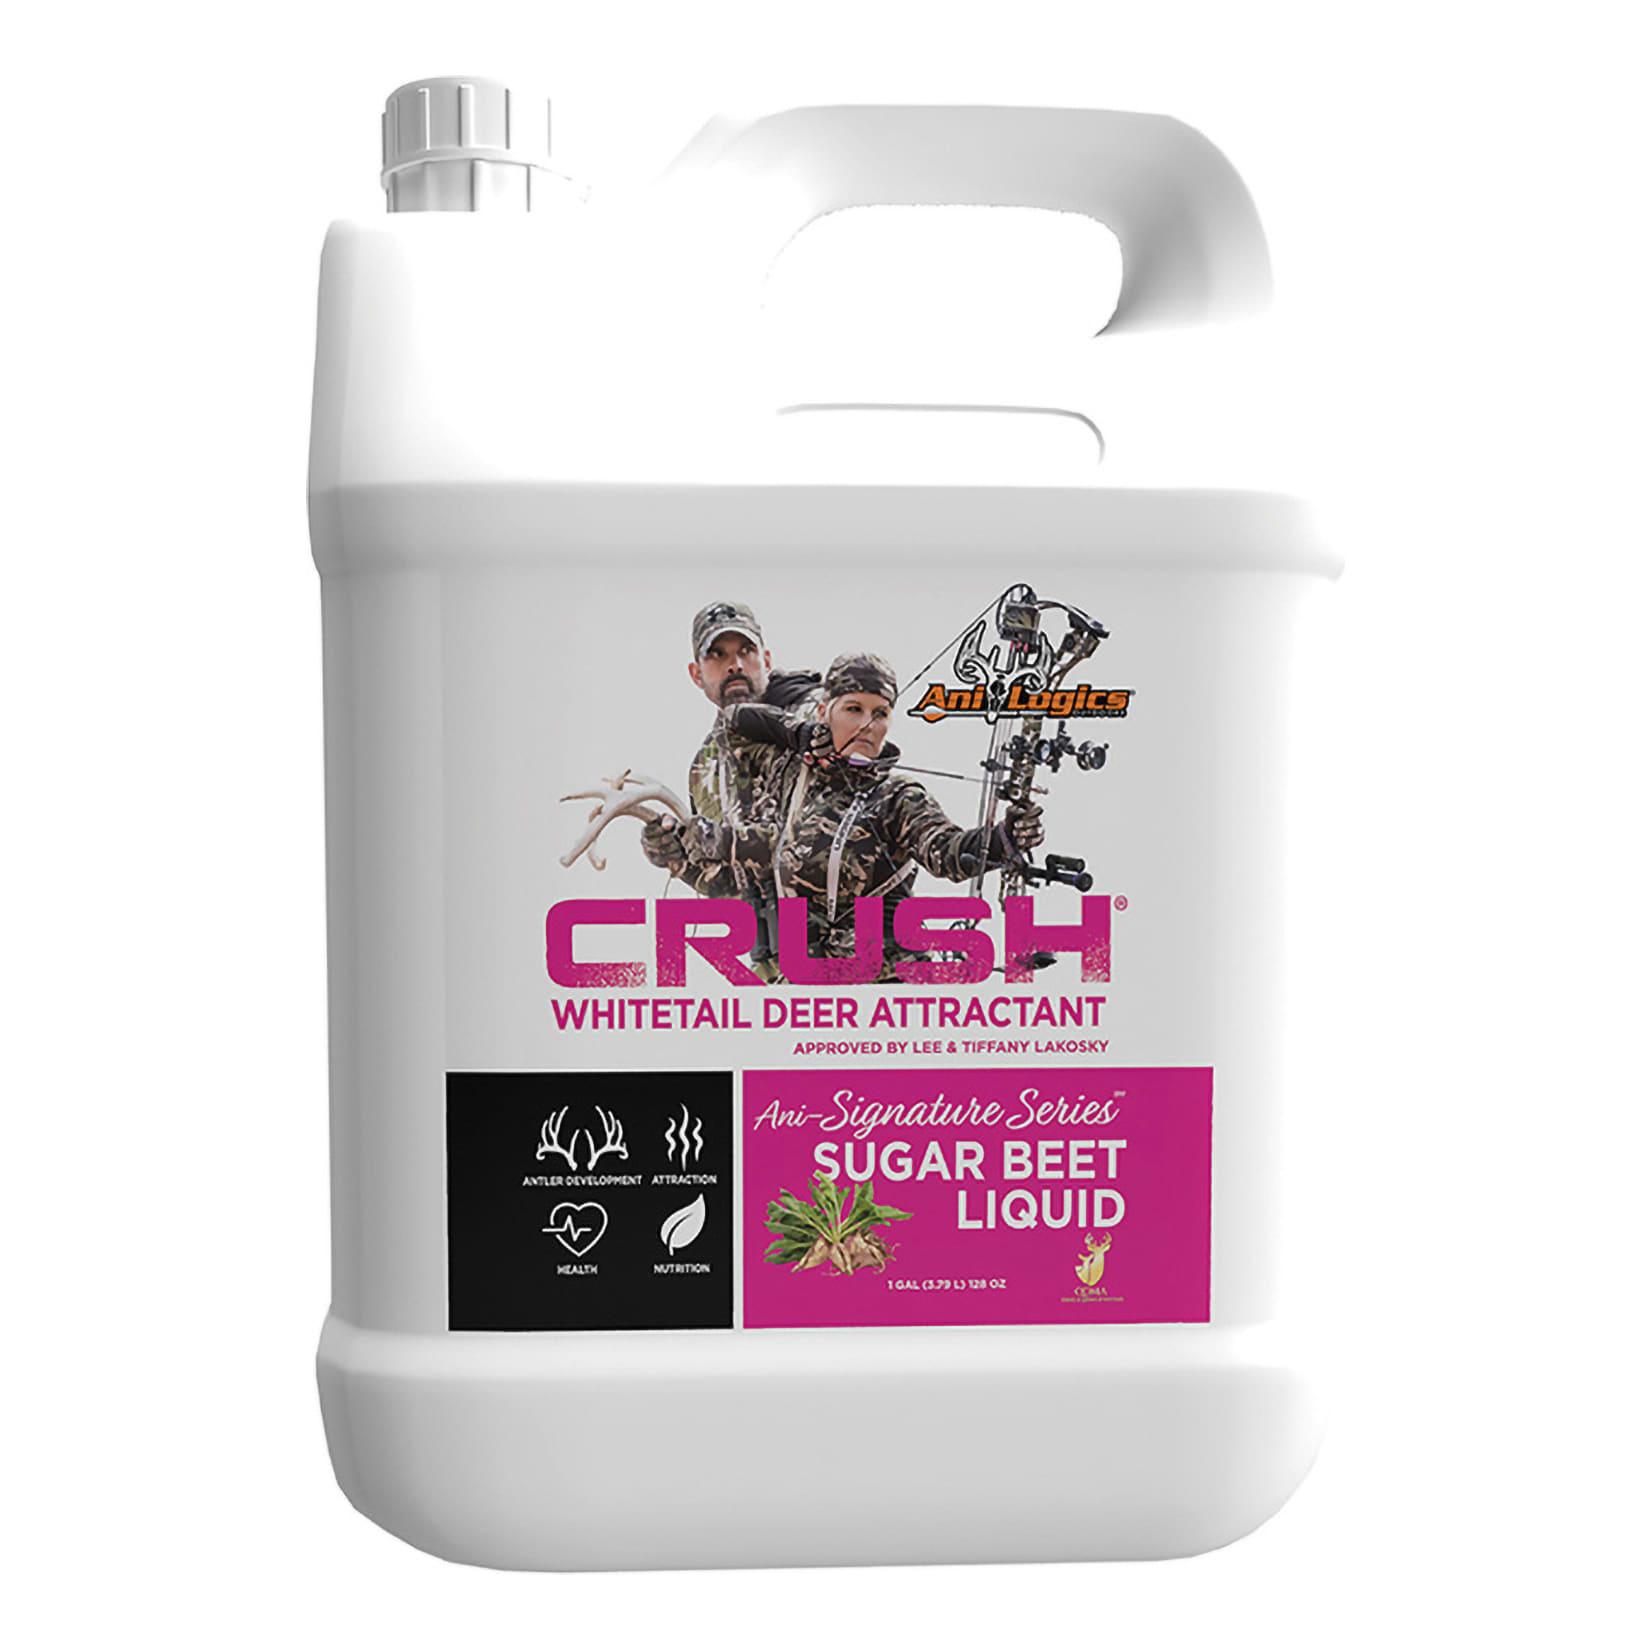 CRUSH® Ani-Signature Series™ Sugar Beet Liquid Attractant